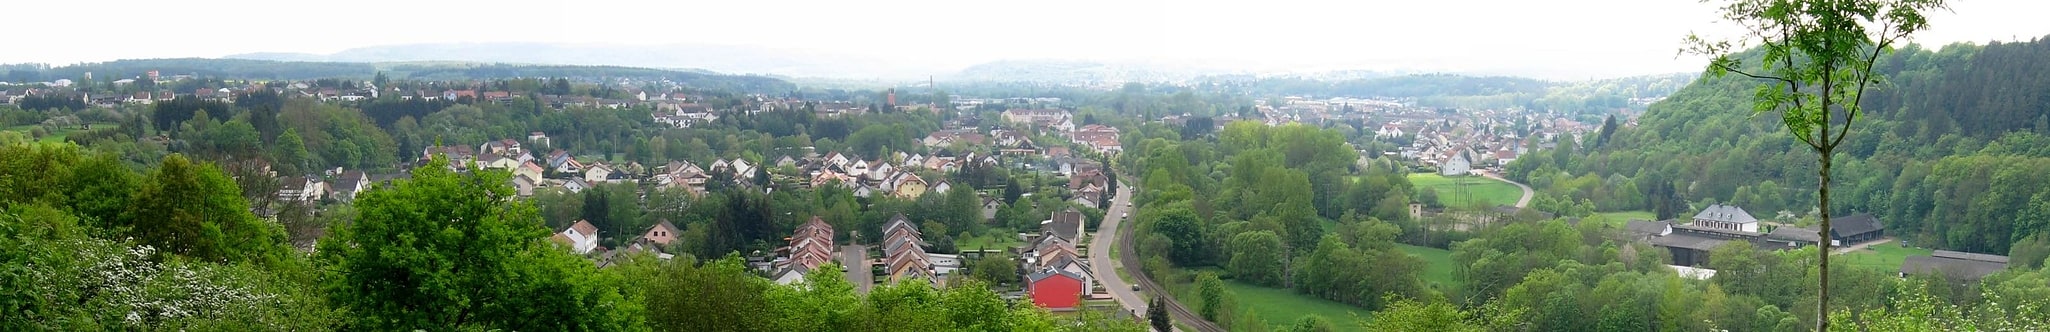 Schmelz, Germany